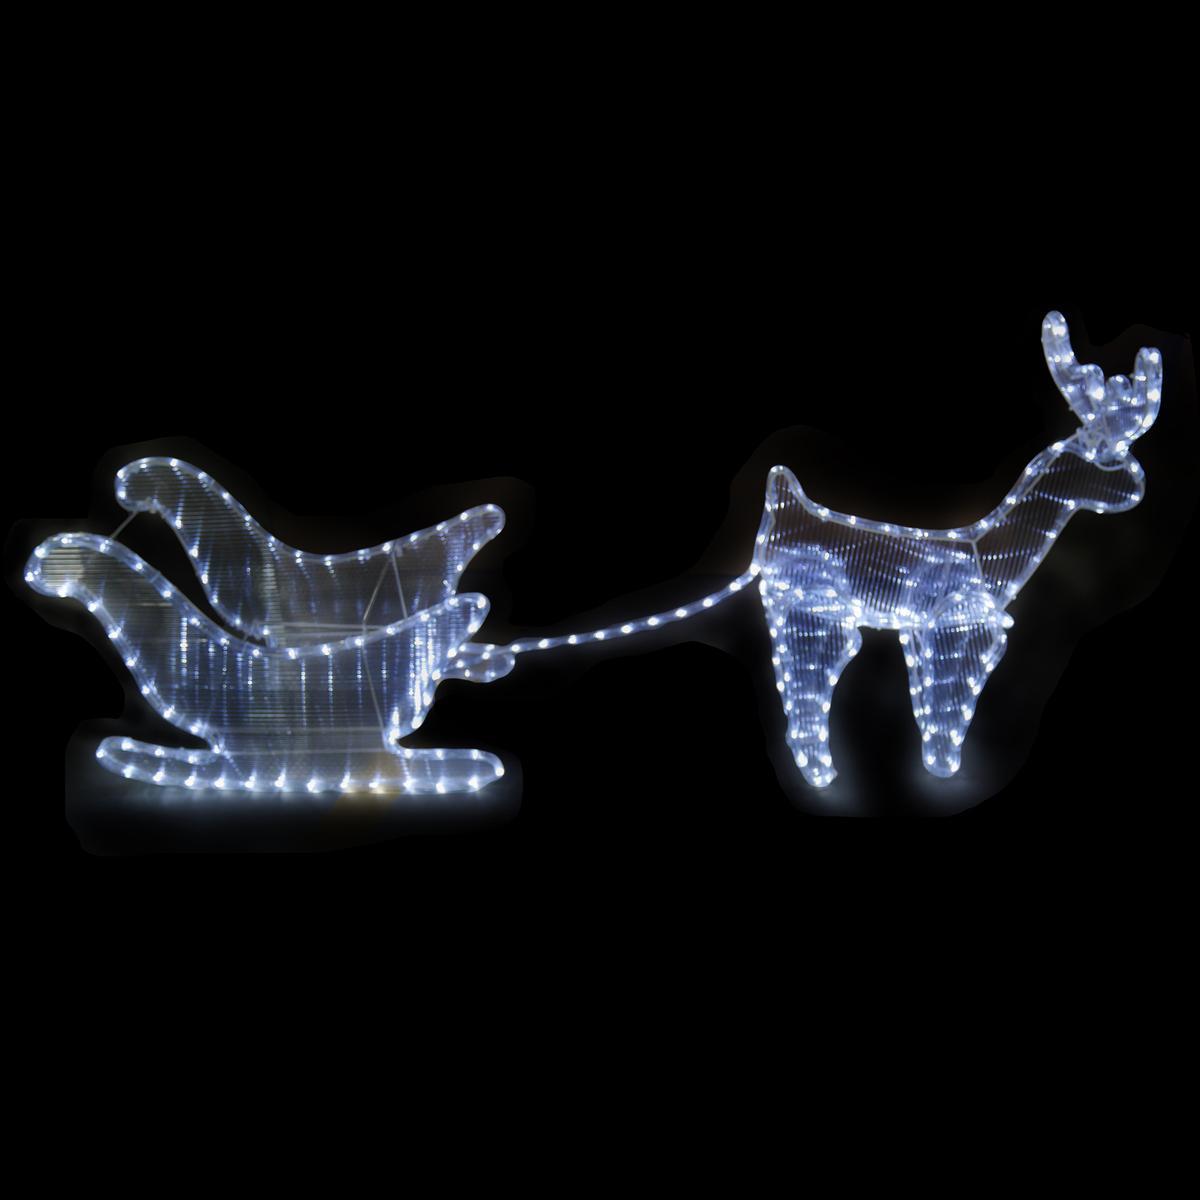 Silhouette electrique led de renne avec traîneau